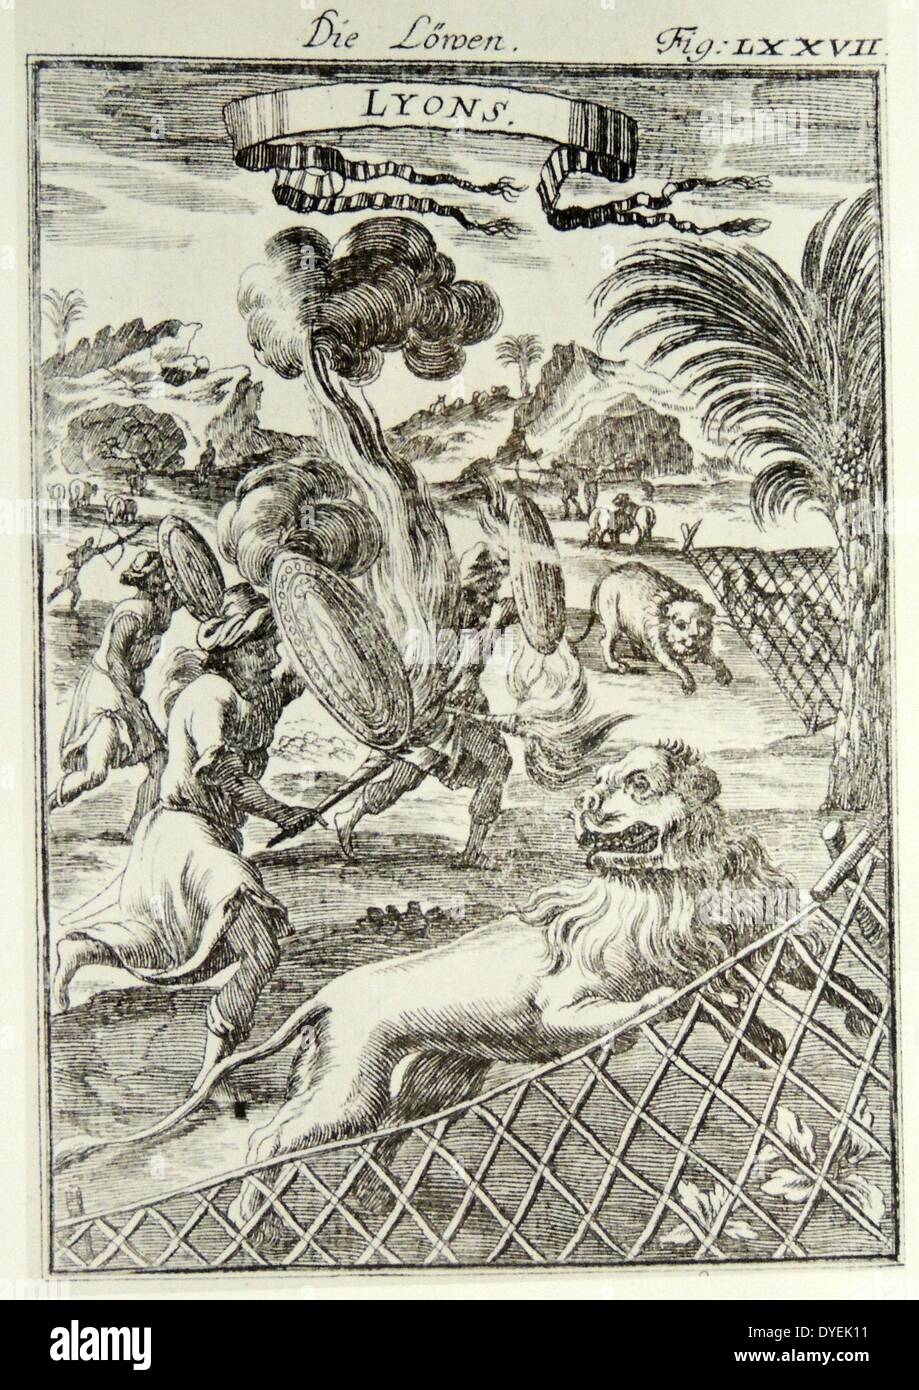 Seltener Stich 'Die Löwen' Lyons publié par Alain Manesson 1686 Mallet-Frankfurt. 17ème siècle Illustration d'animaux d'Afrique Banque D'Images